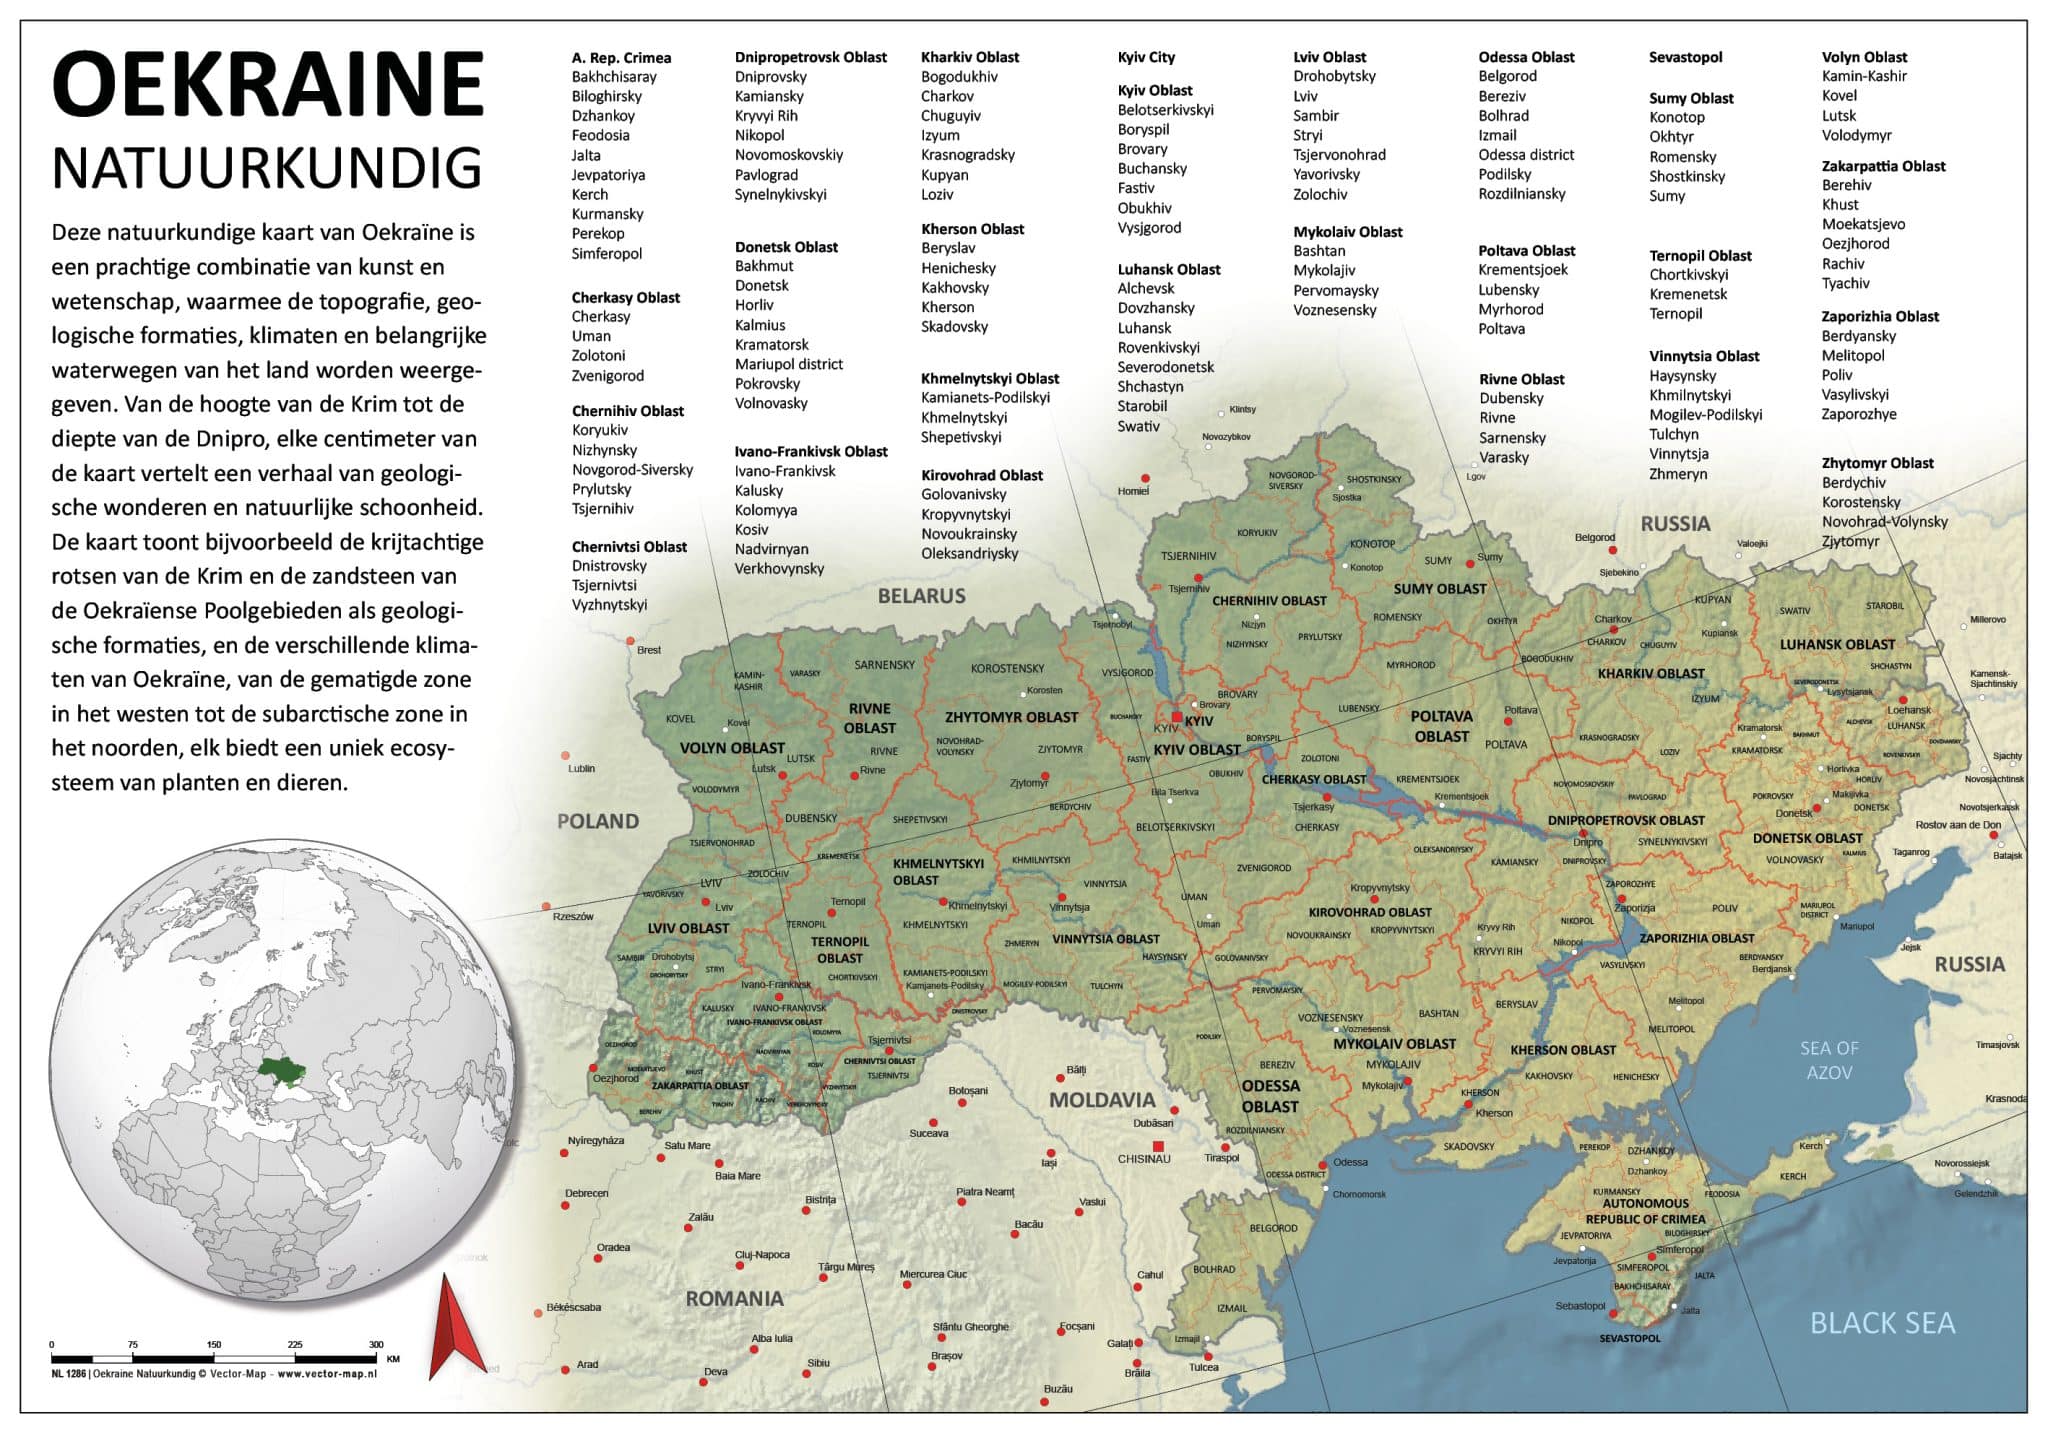 NL 1286 Natuurkundige kaart Oekraine_WEB